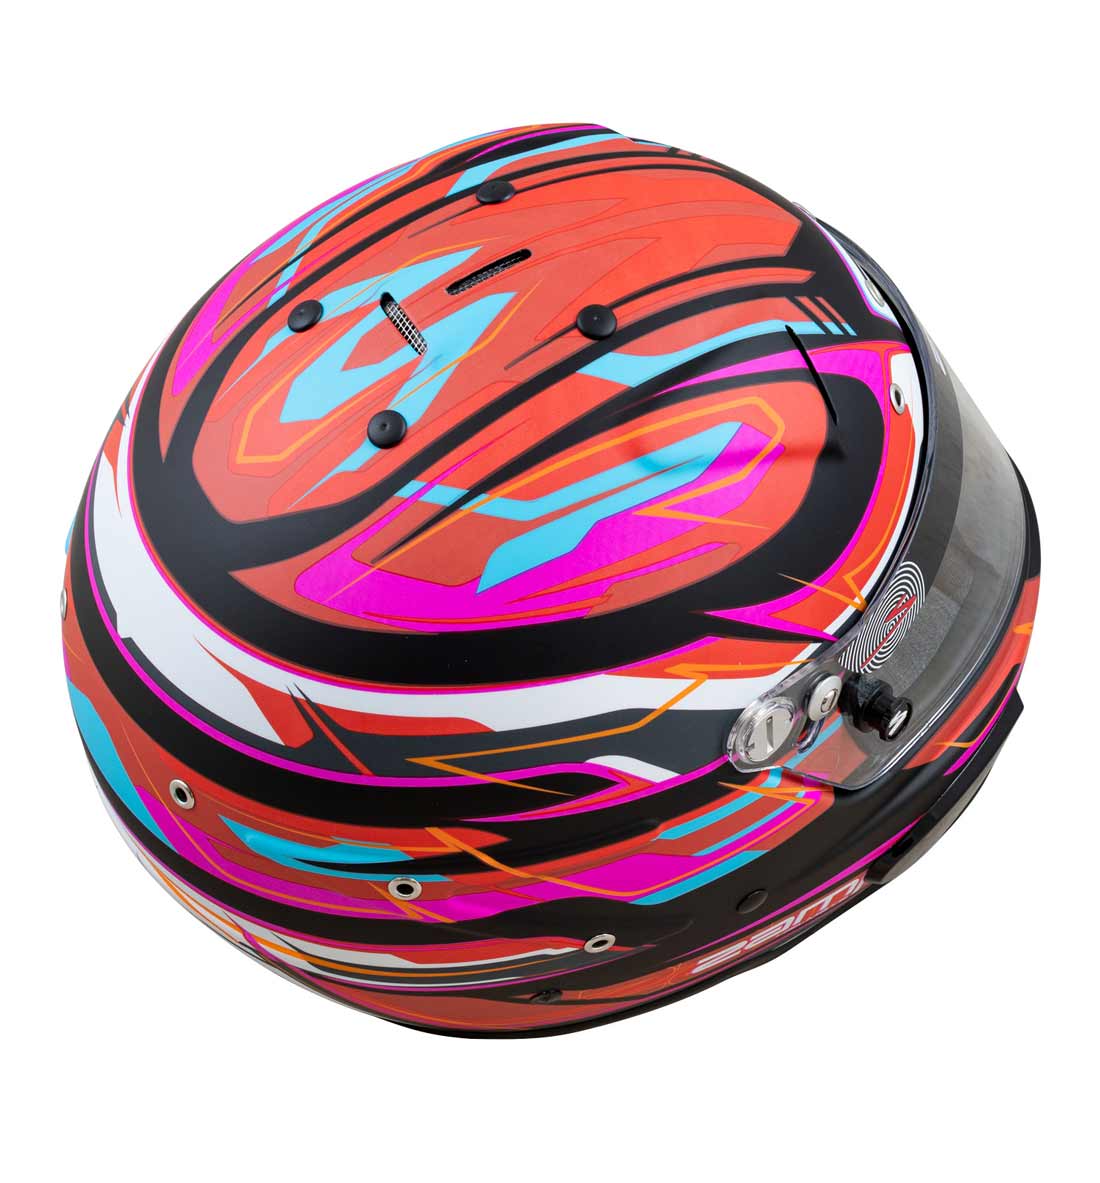 Zamp RZ 70 Helmet FIA 8859-2015 SA2020 - Red/Black/Blue